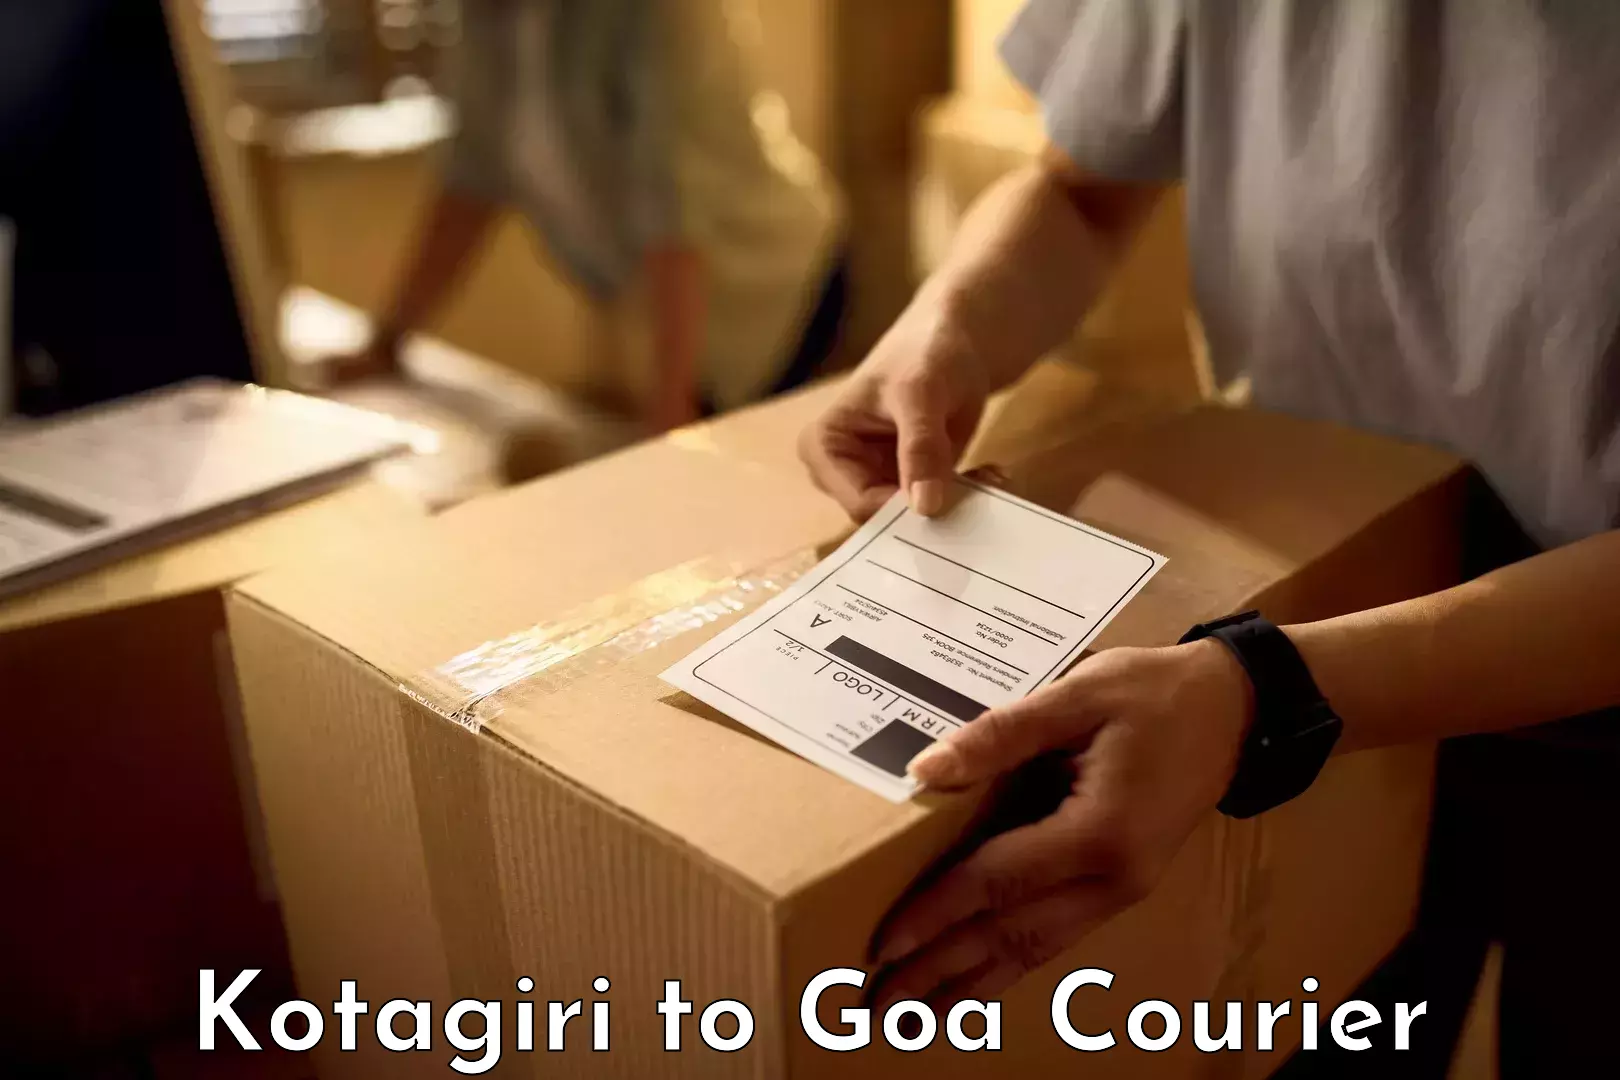 Same day luggage service Kotagiri to IIT Goa